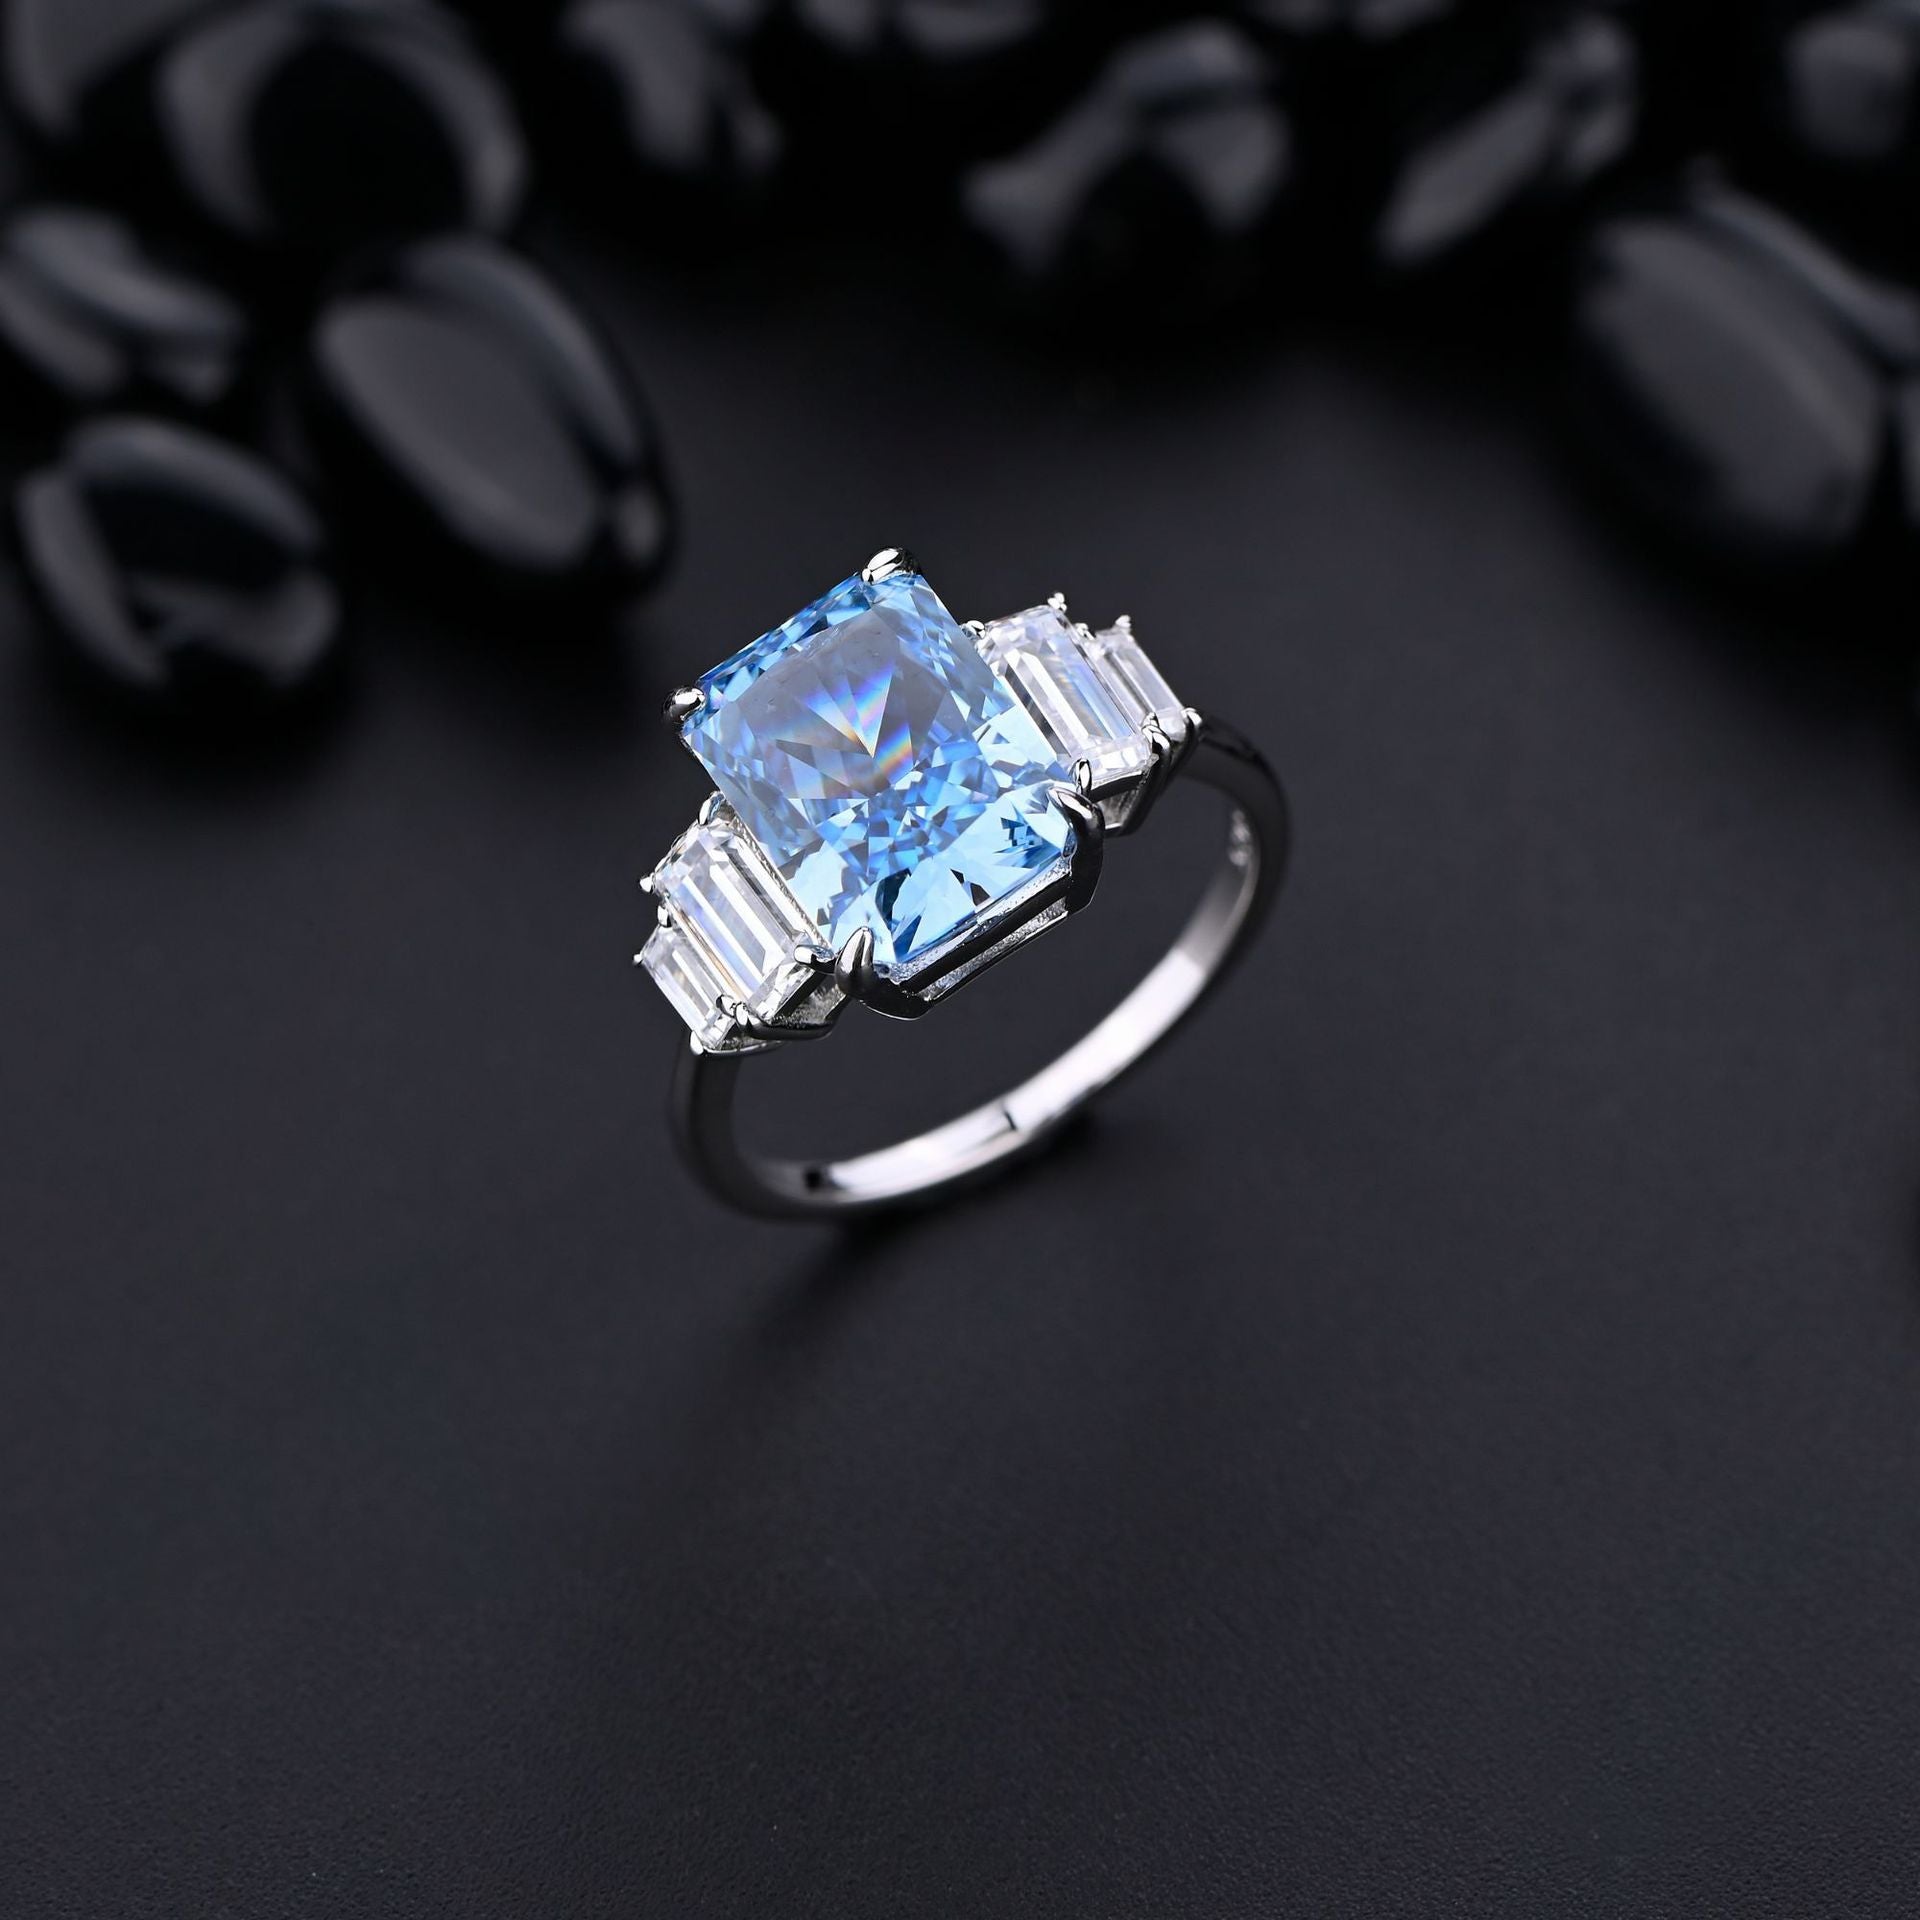 "Azure Elegance" Adjustable Ring with Synthetic Aquamarine